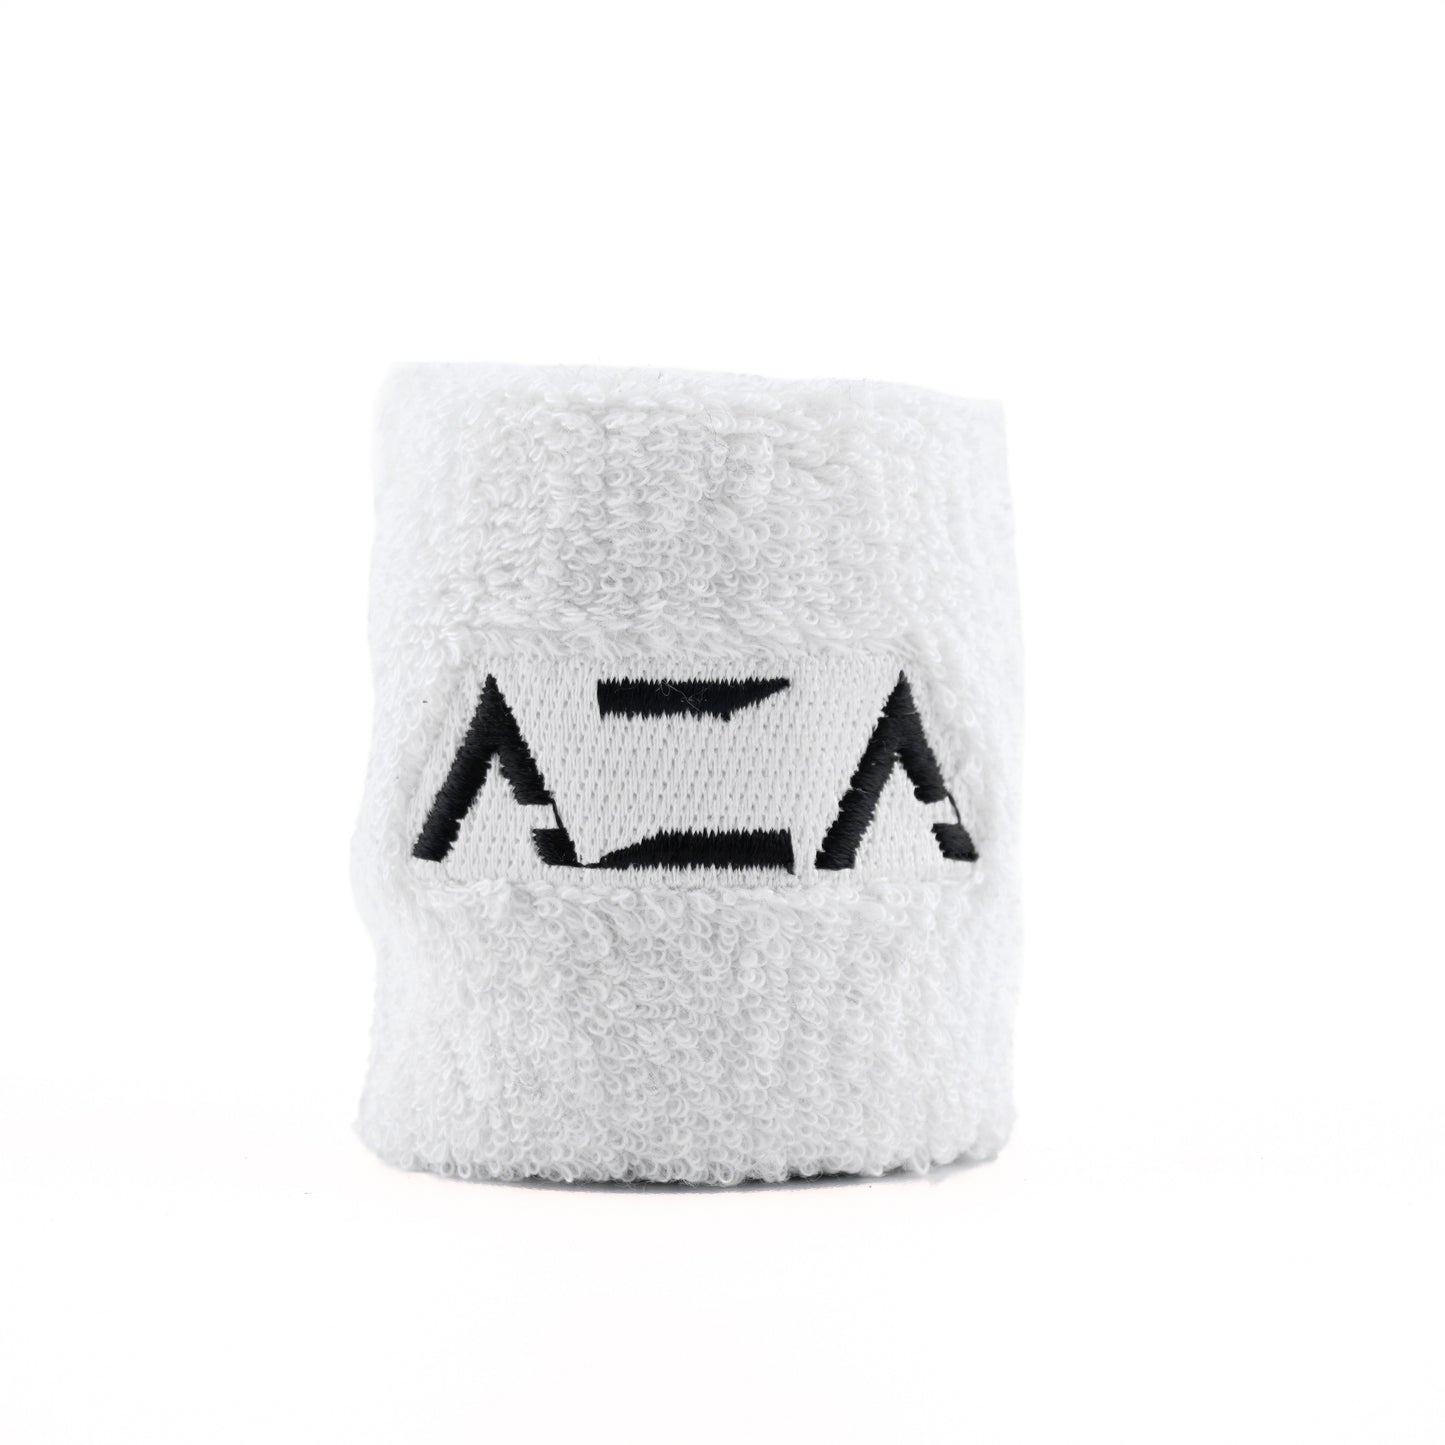 AZA Wristband Basic - White